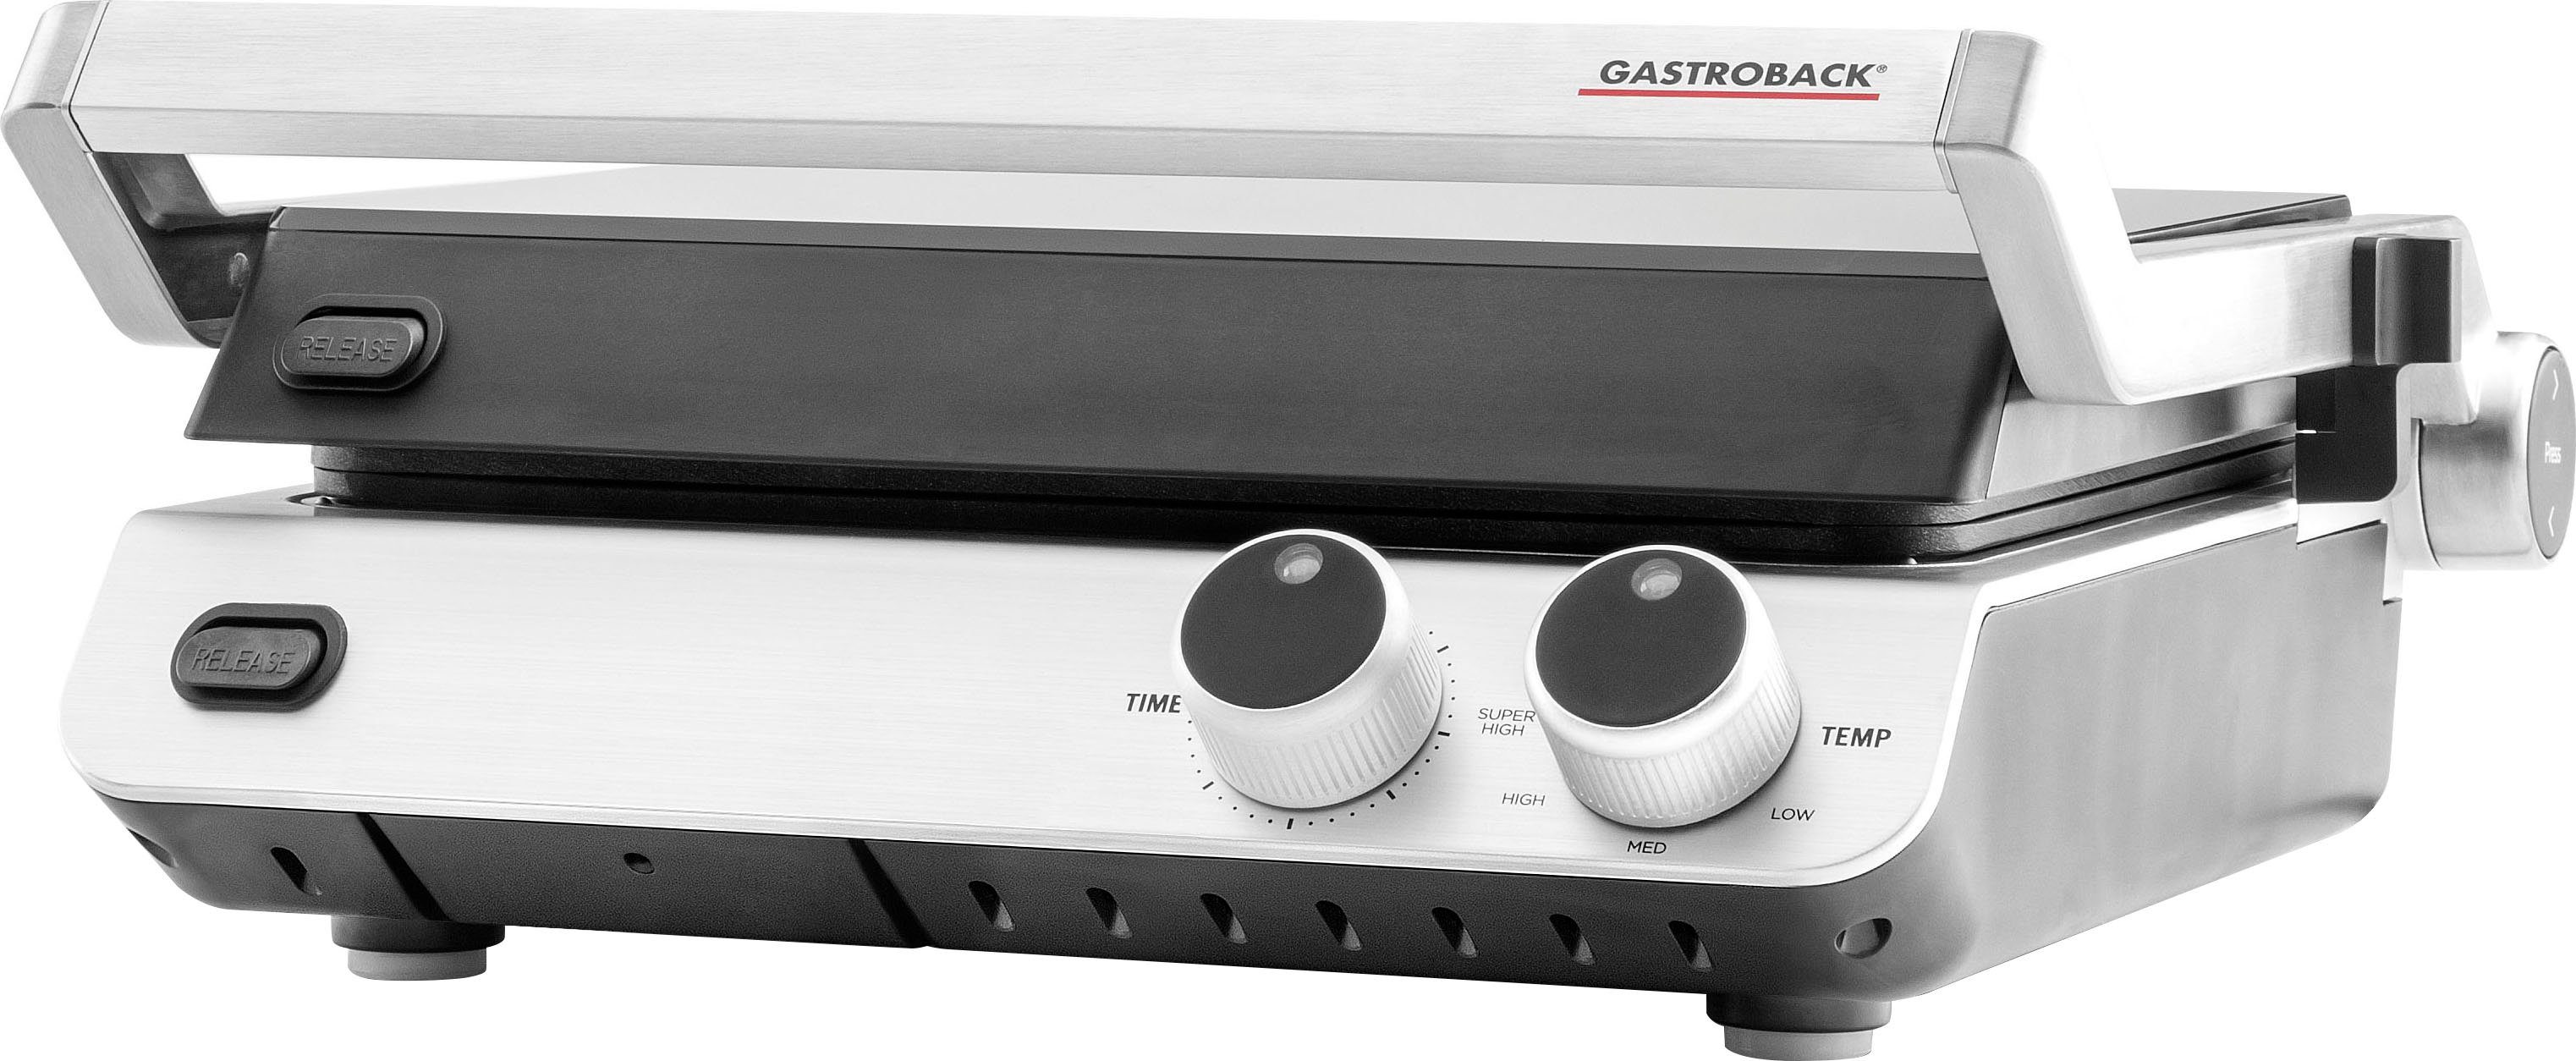 Gastroback Kontaktgrill 42537 Design BBQ Pro, 2000 W, Schnelles Aufheizen  (2.000 - 2.400 Watt Hochleistungsthermostat) | Kontaktgrills